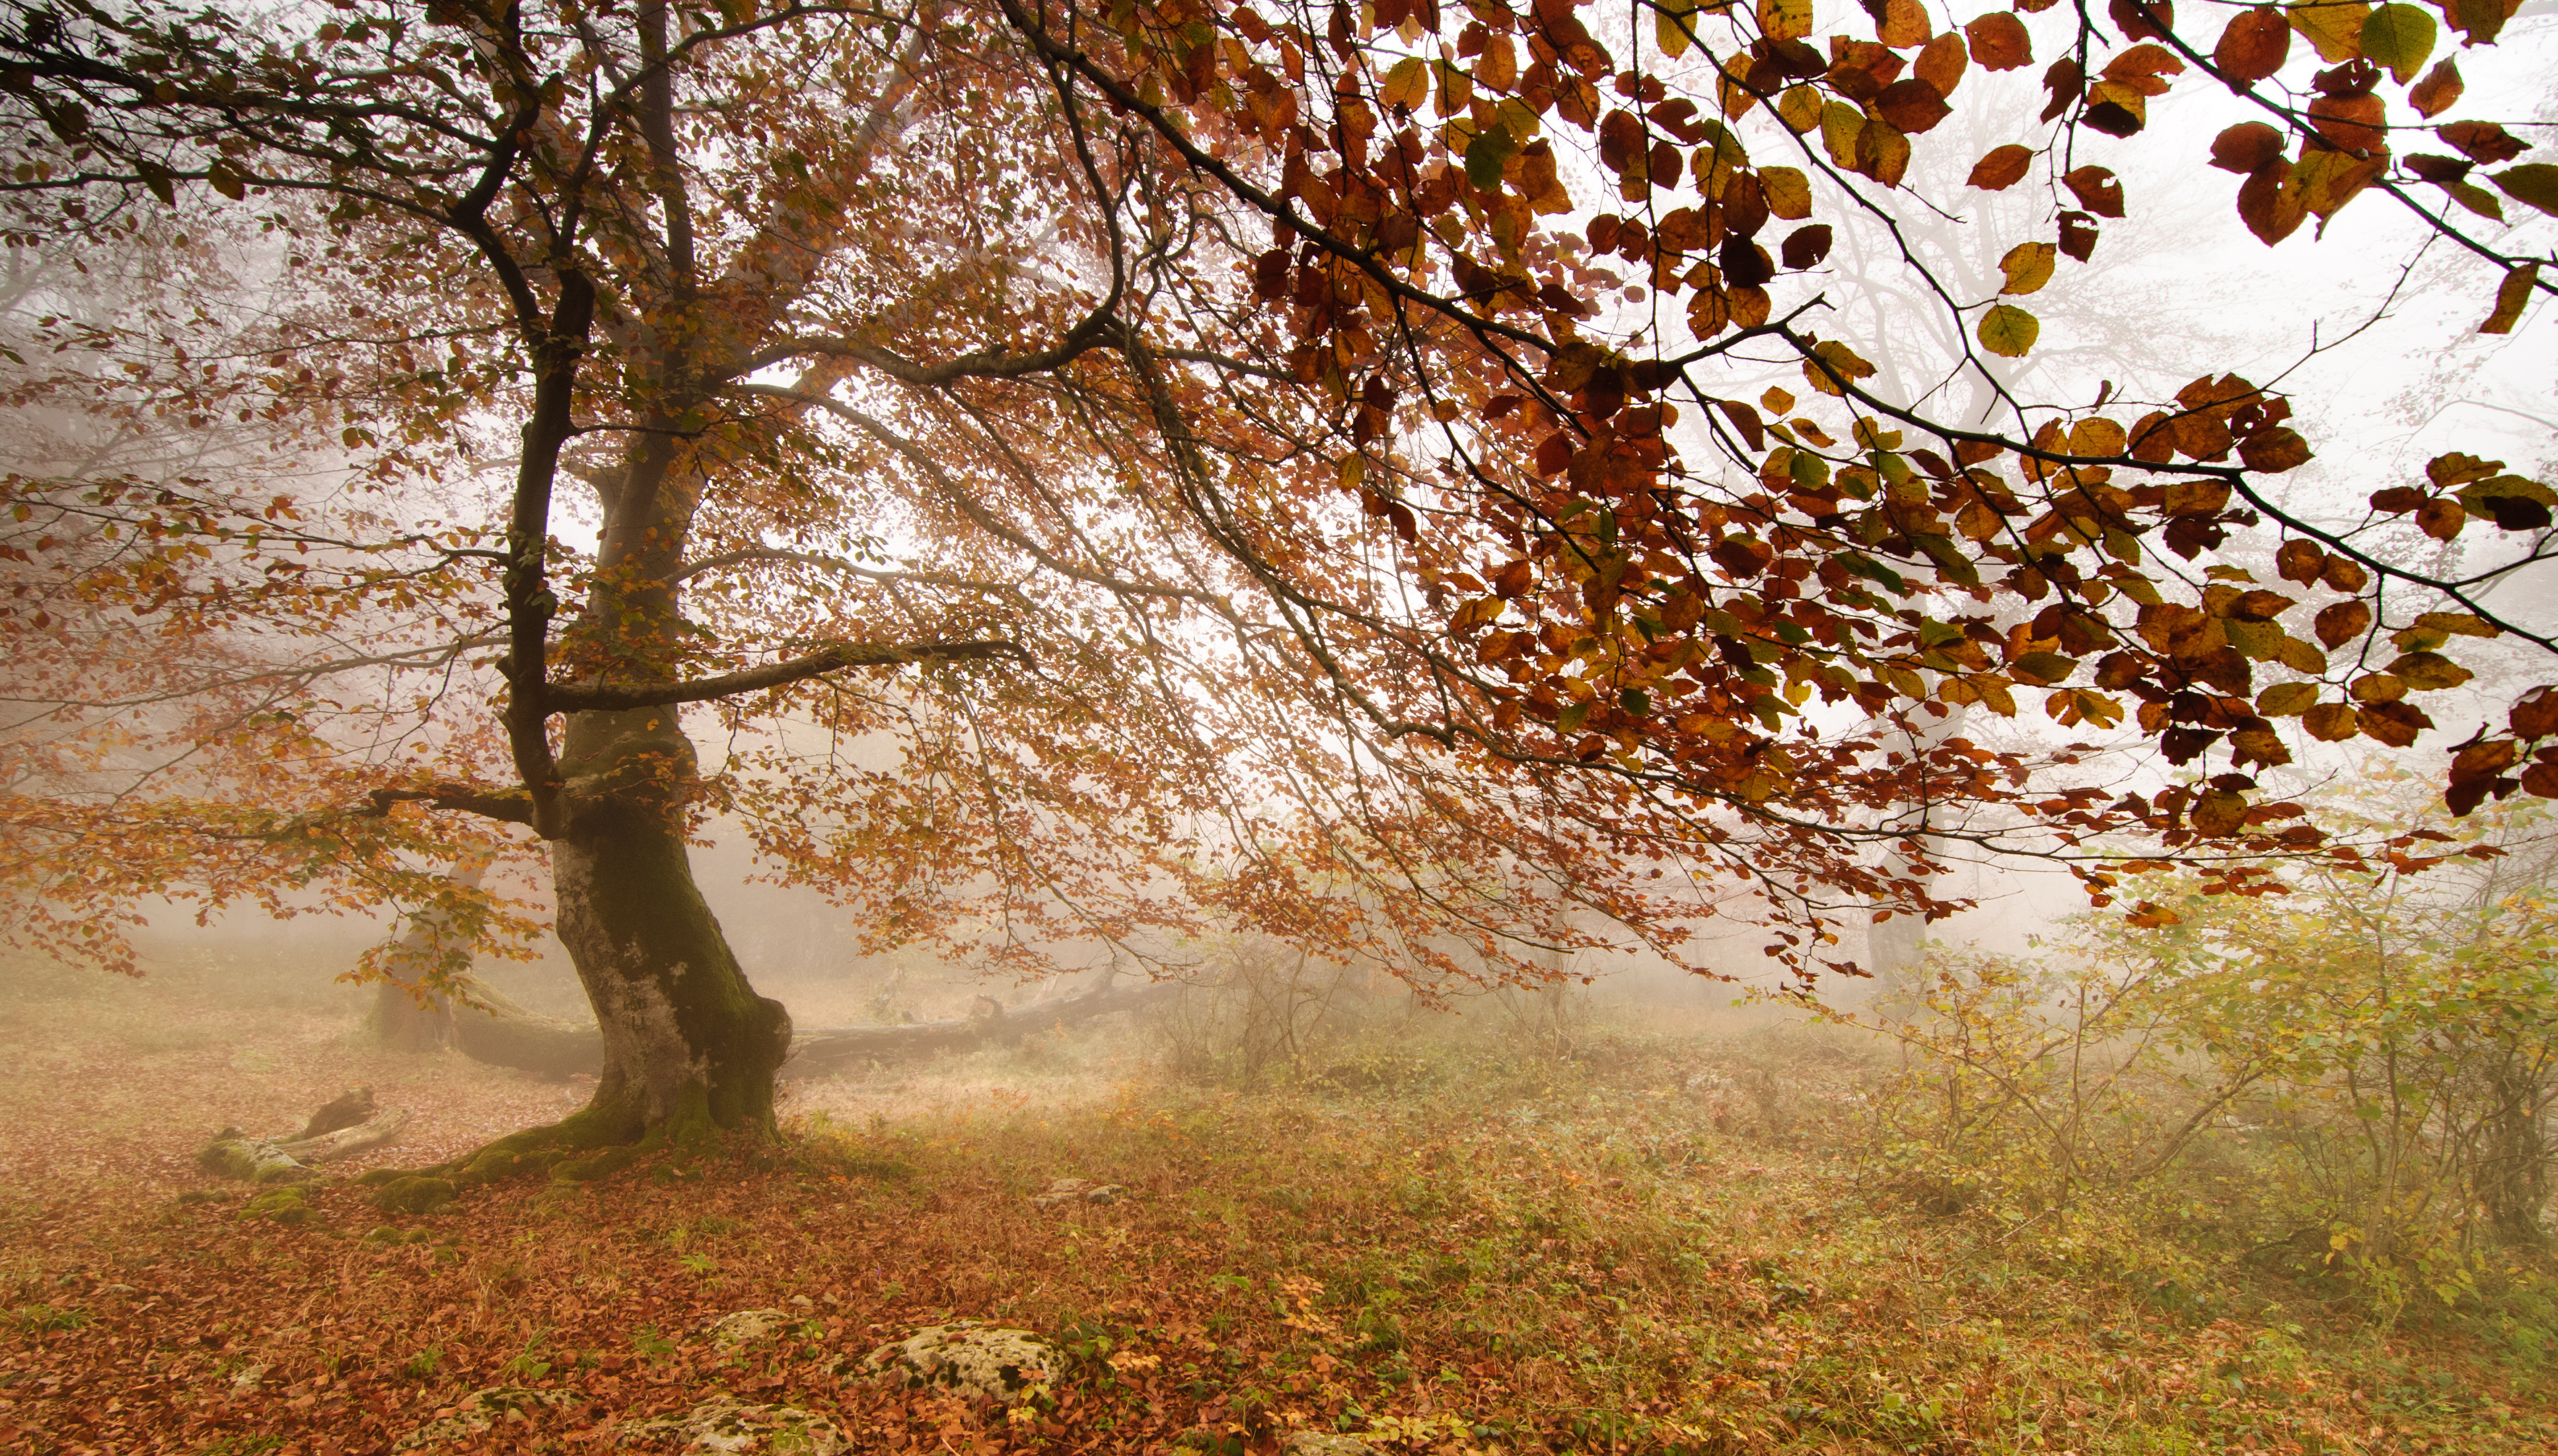 Ветер играет легкой листвою. Орешина дерево осенью. Осень ветер. Дерево с опавшей листвой.